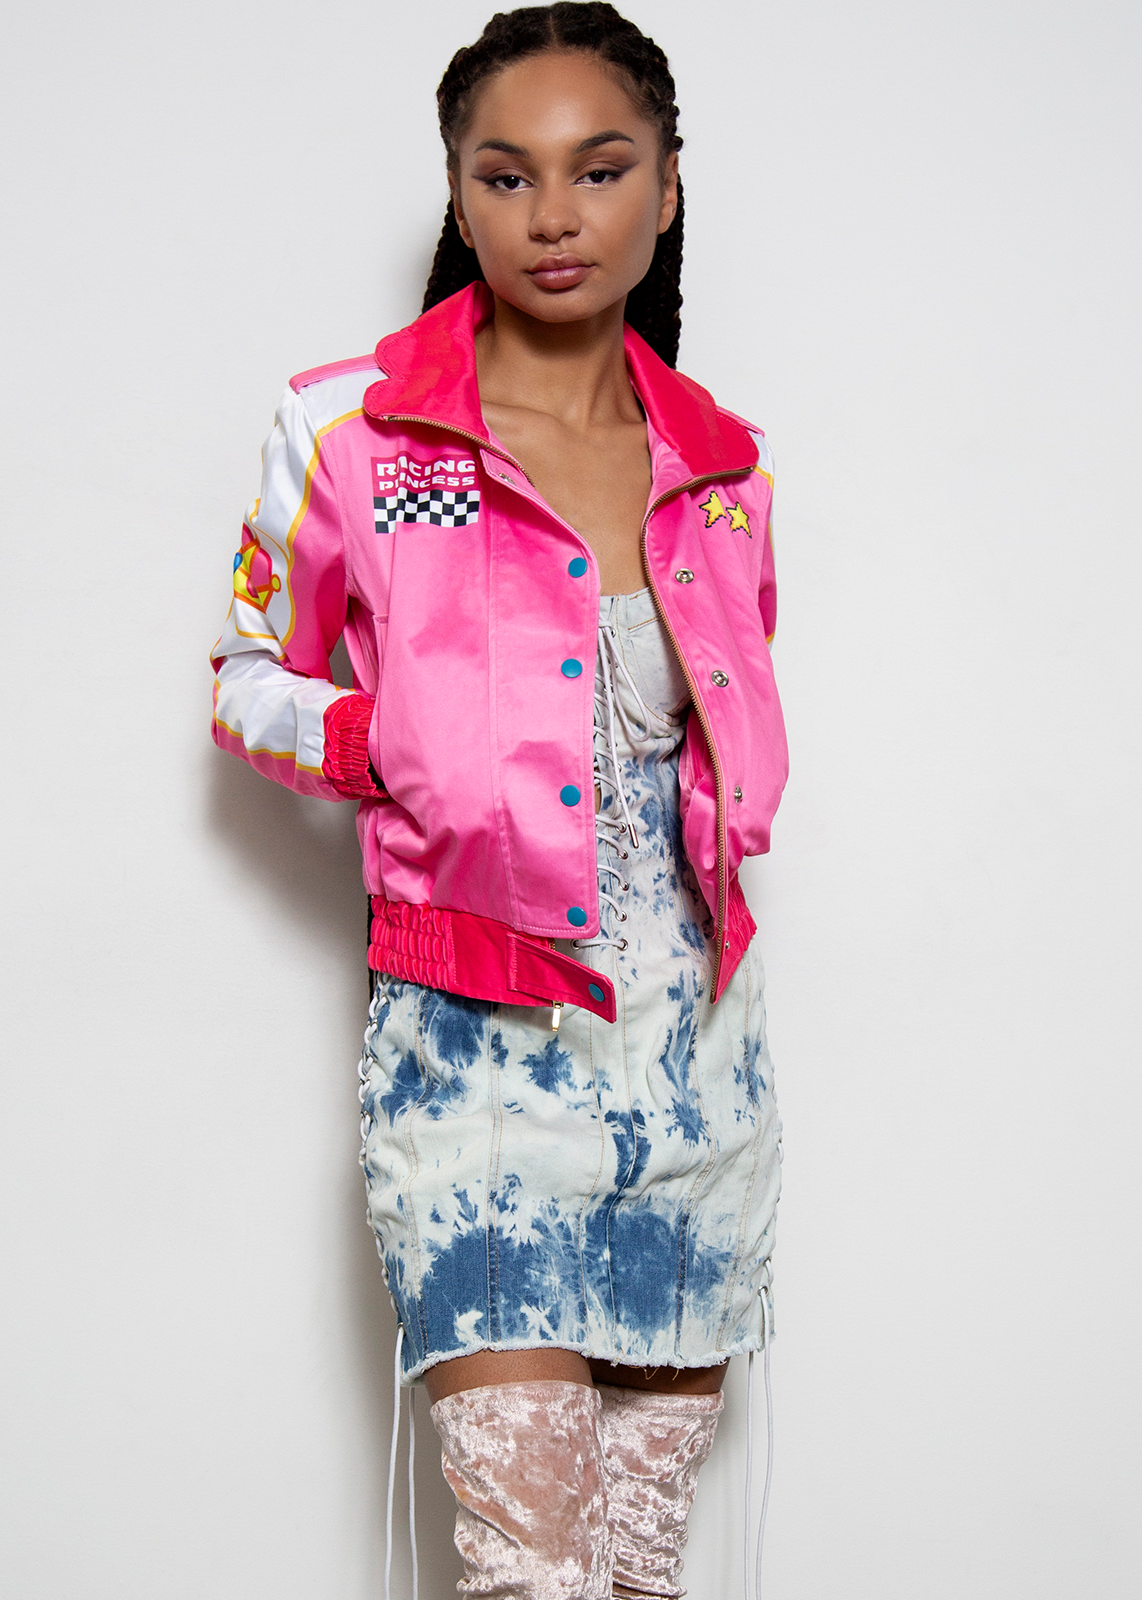 Cuty Doll Women Biker Celebrity Lace Sleeve Bomber Jacket Coat Outwear Kawaii